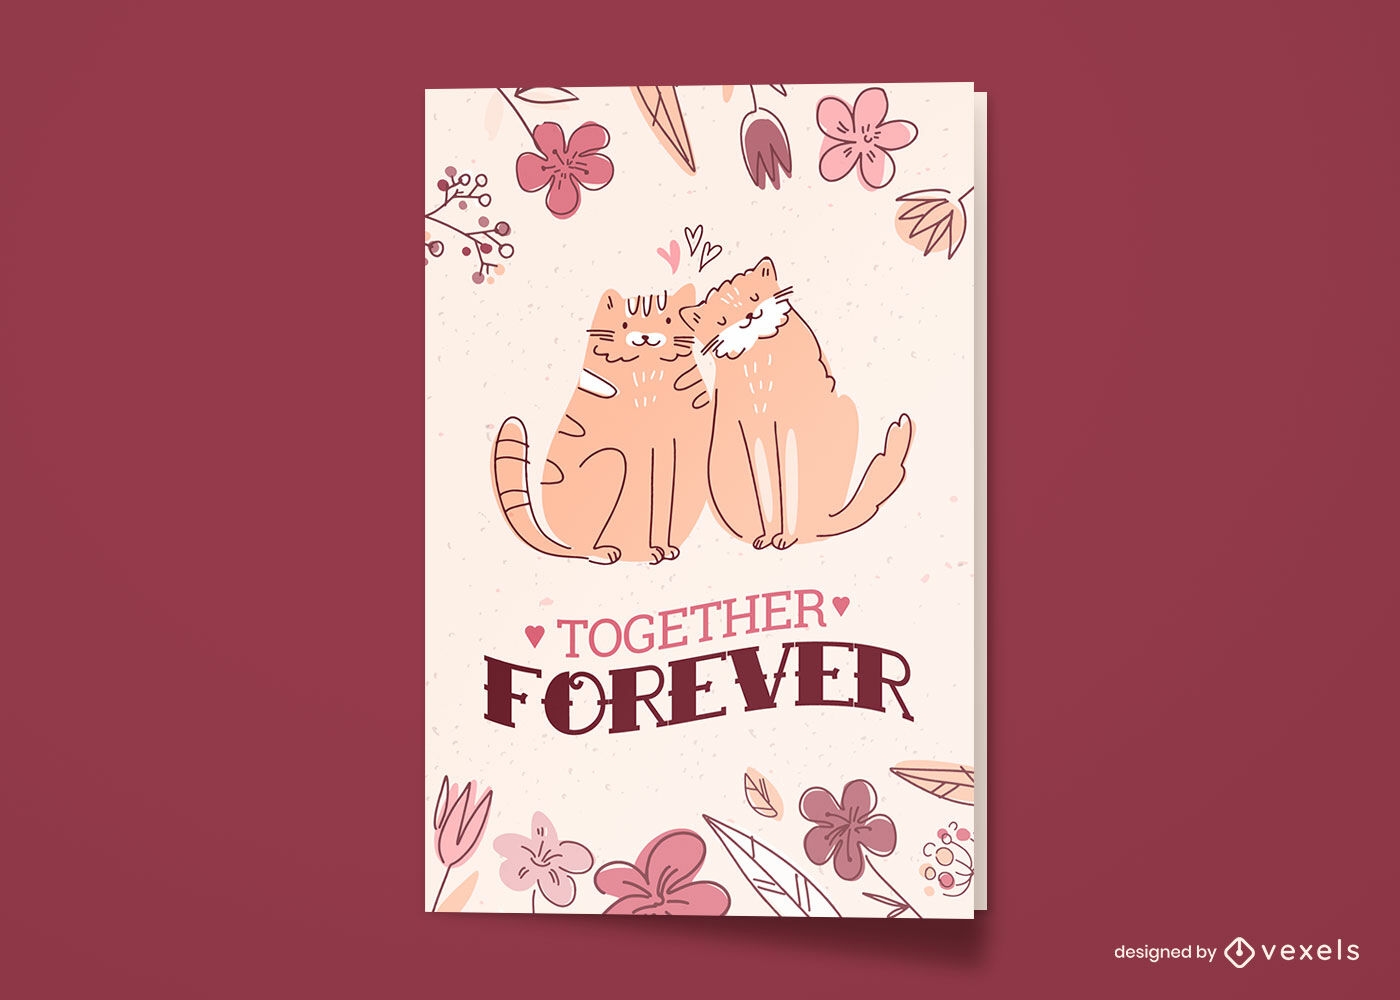 Animais gatos apaixonados doodle cart?o comemorativo